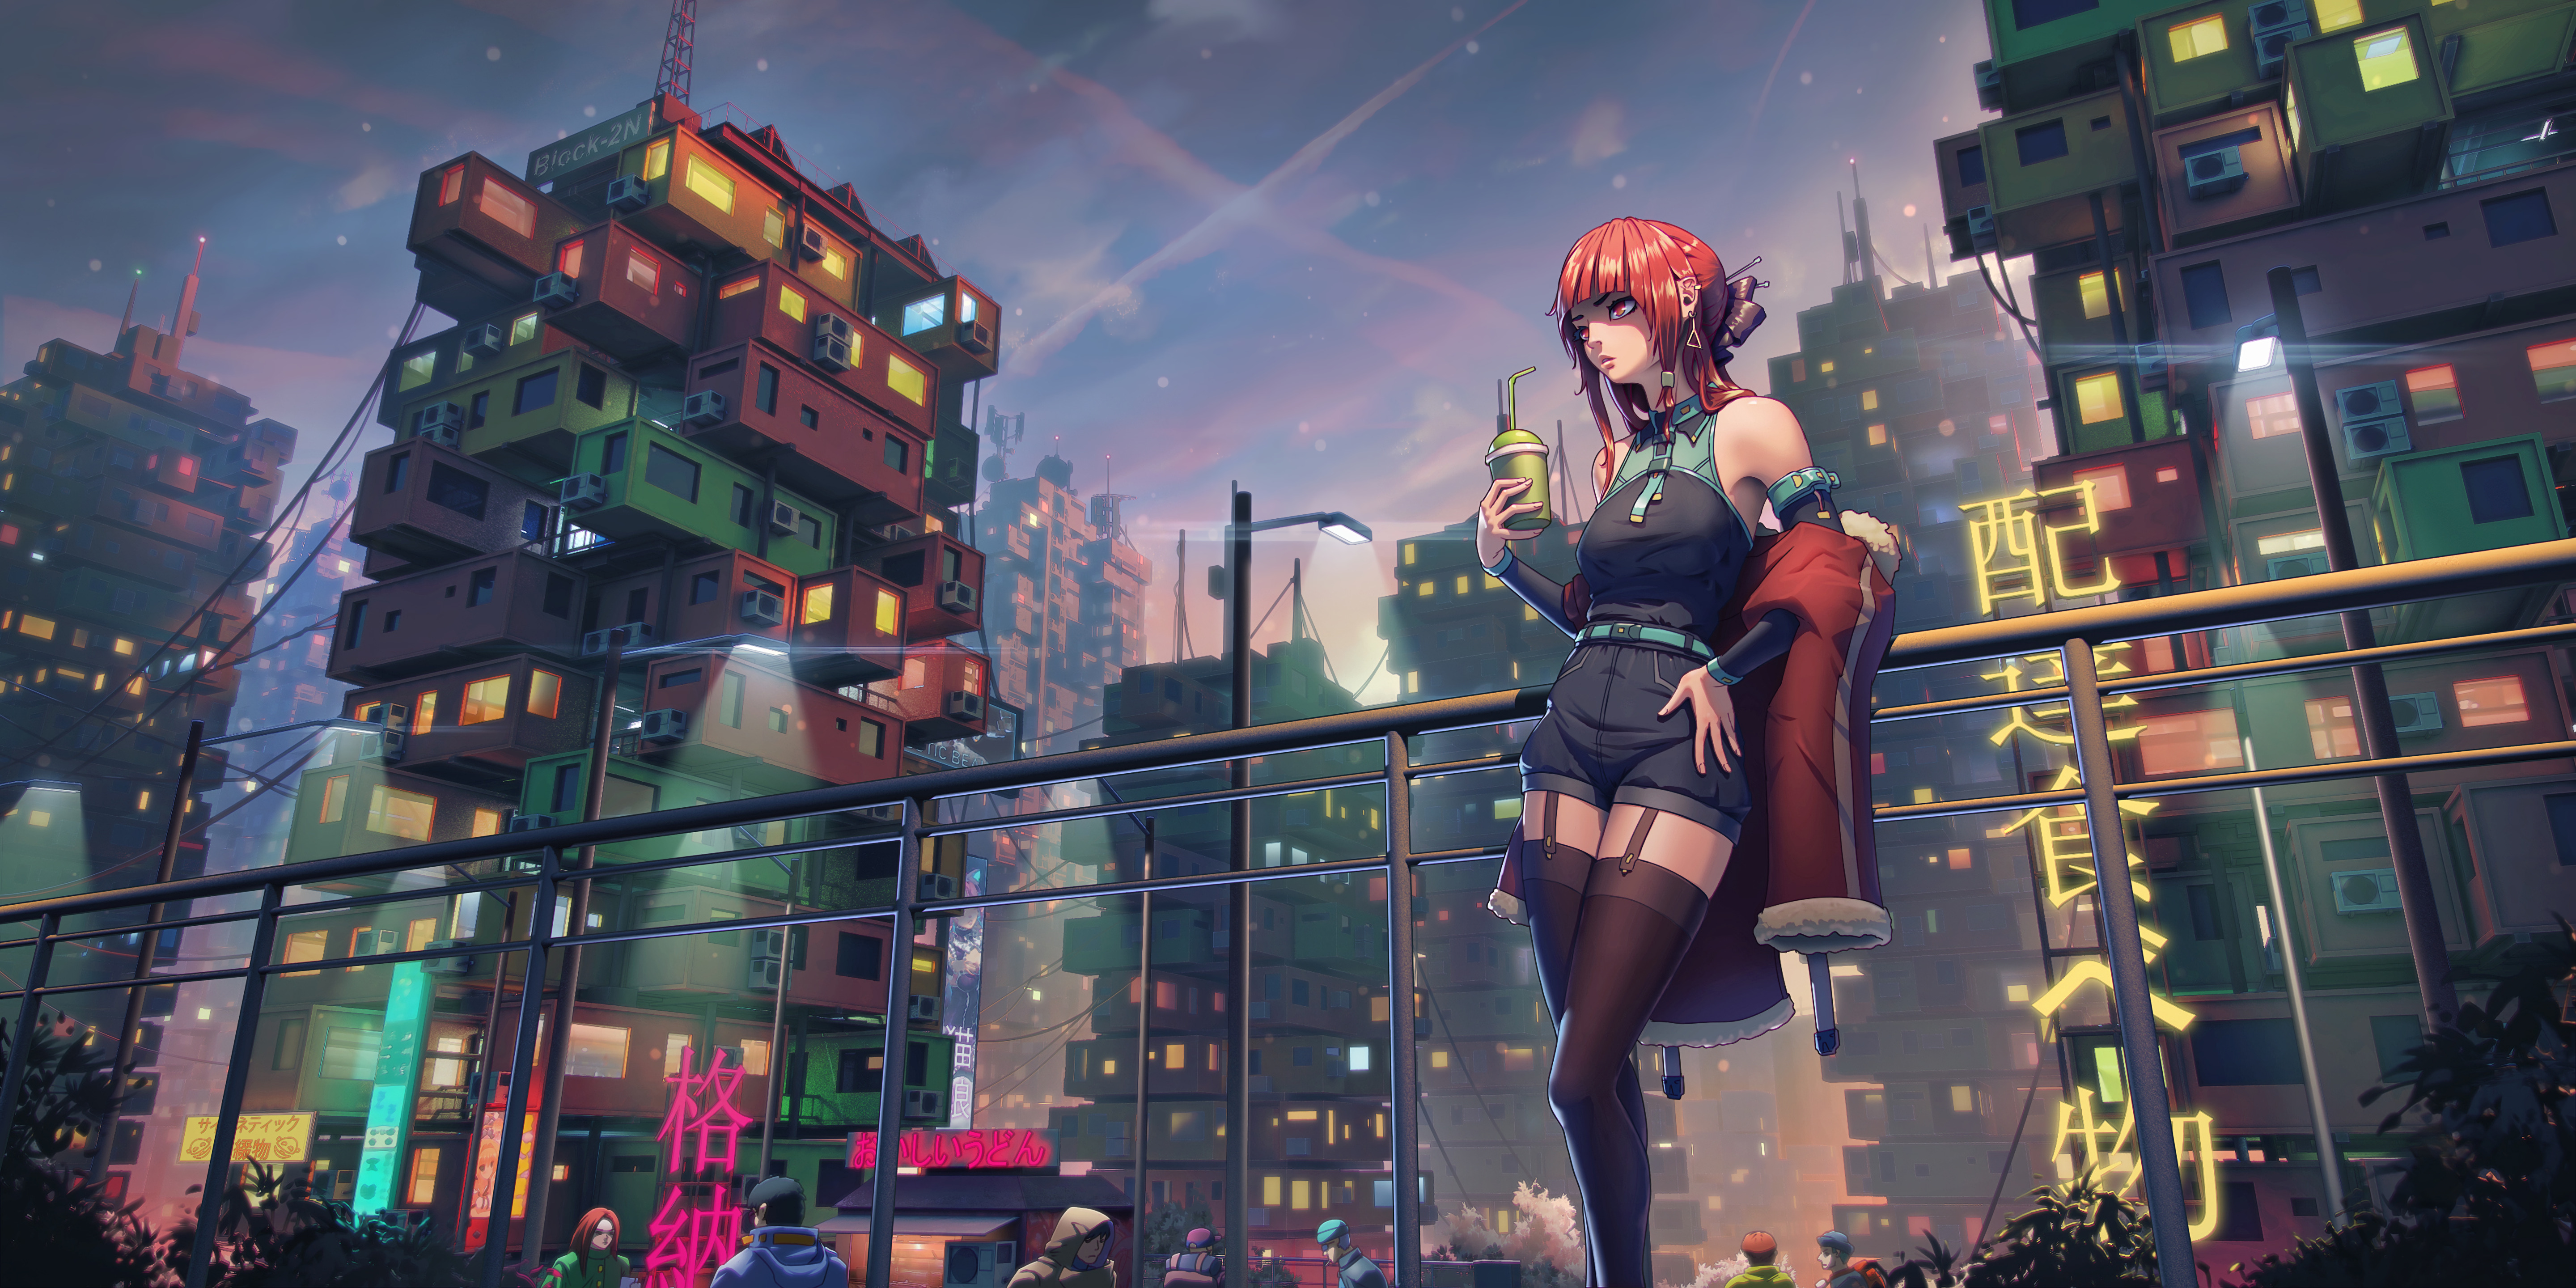 City Cyberpunk 4K Drink Sky Anime Girls VKovpak Wallpaper:5760x2880